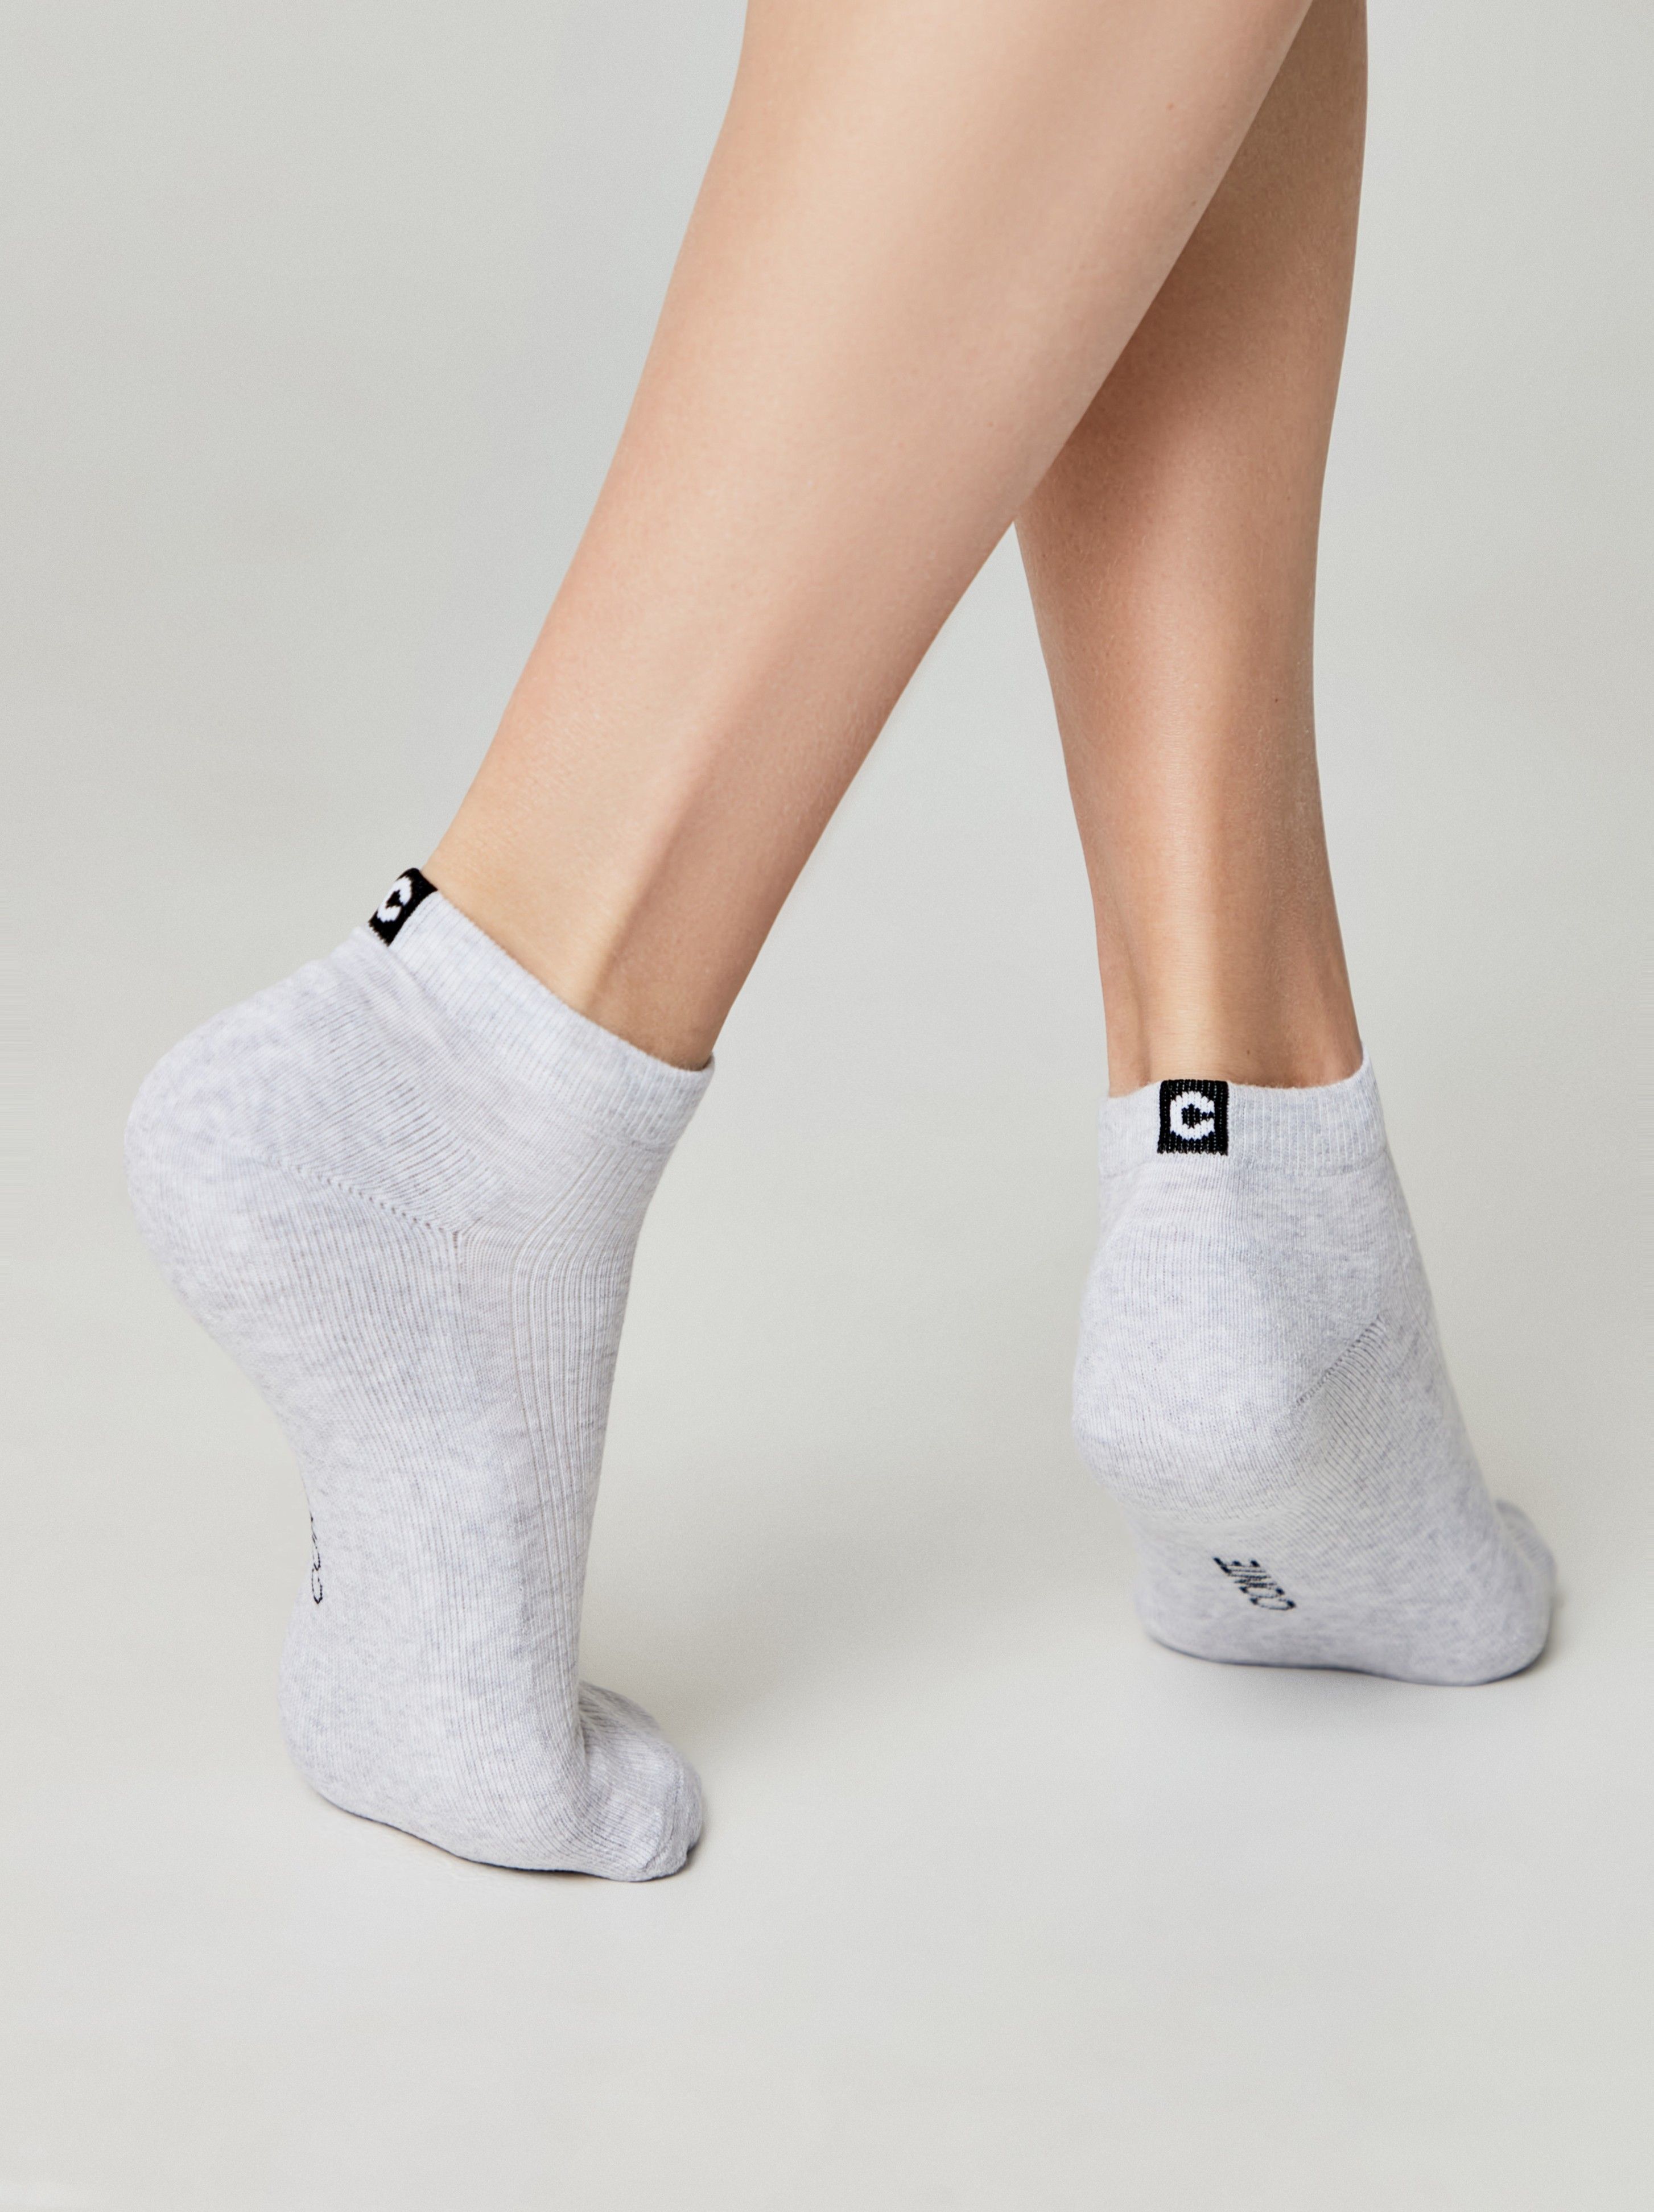 Короткие носки из хлопка с махровой стопой и отсылкой к логотипу бренда Conte ⭐️, цвет светло-серый, размер 36-37 - фото 1